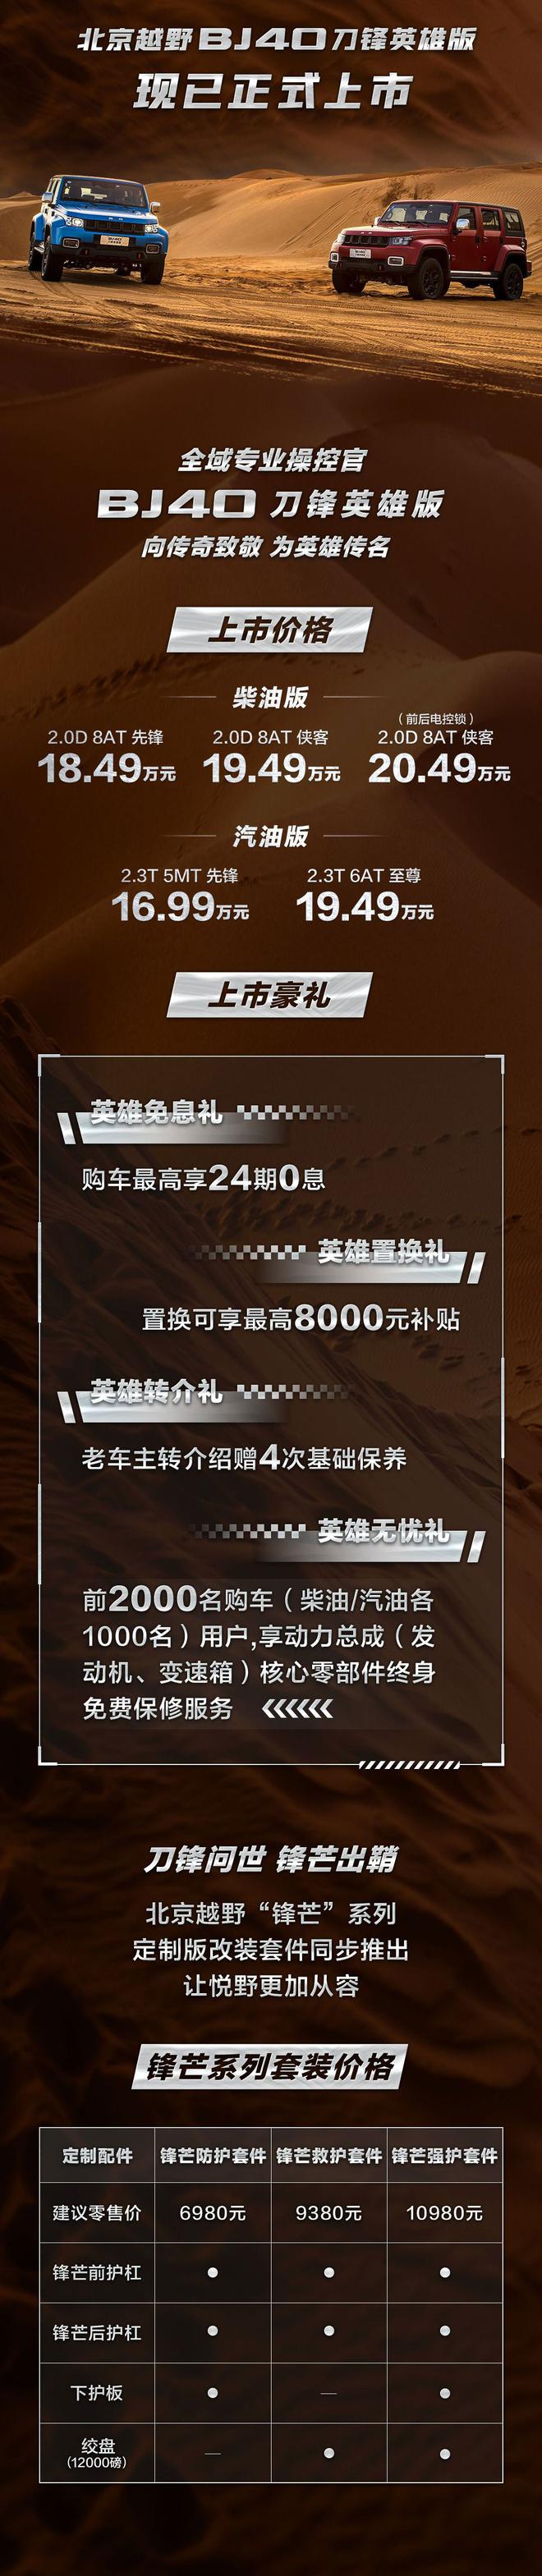 北京BJ40刀锋英雄版正式上市 售价16.99-20.49万元